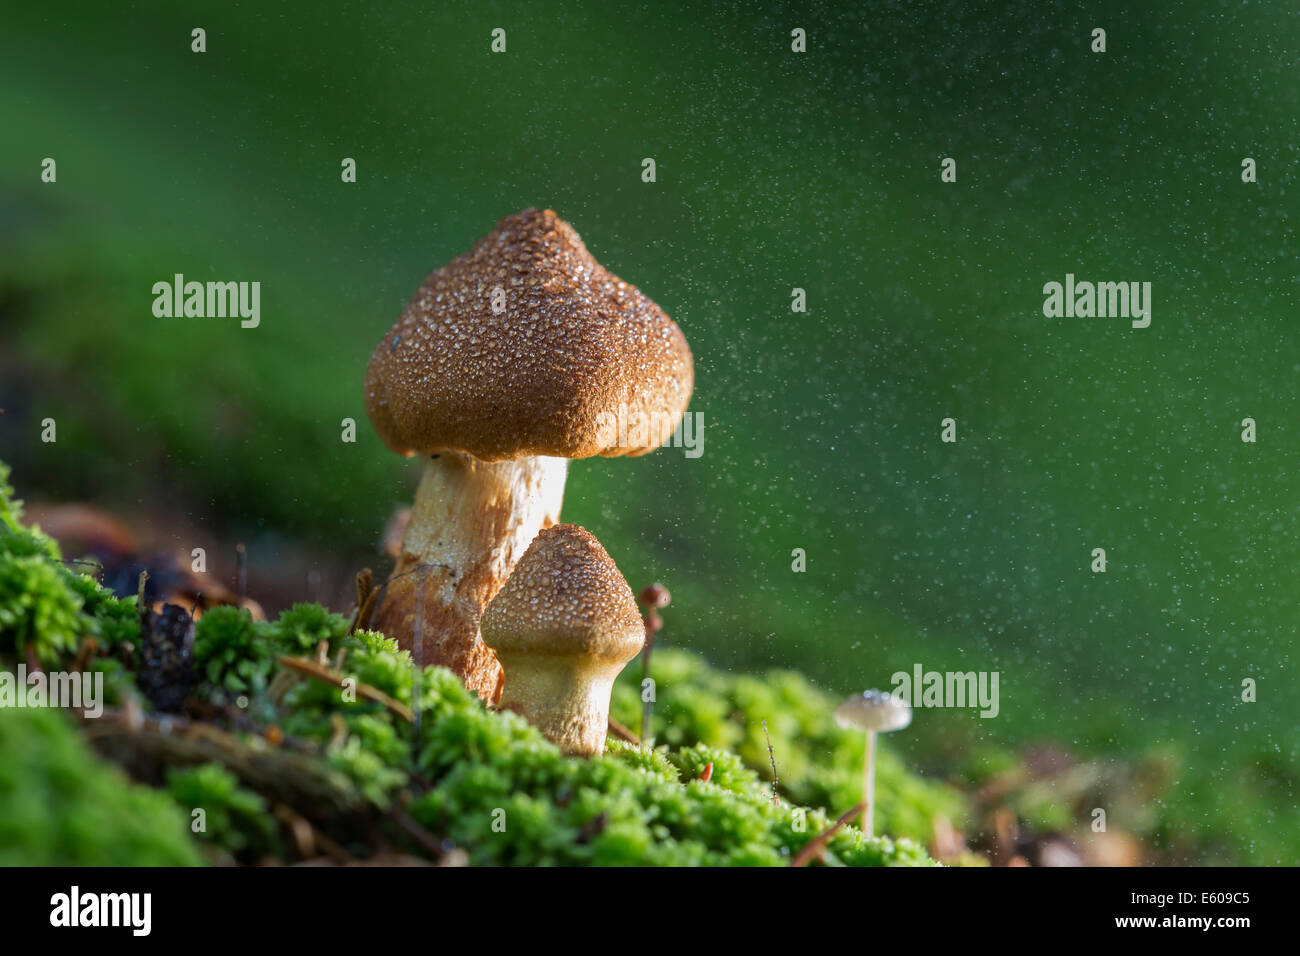 Magic mushrooms - Deadly webcap (Cortinarius rubellus) Stock Photo